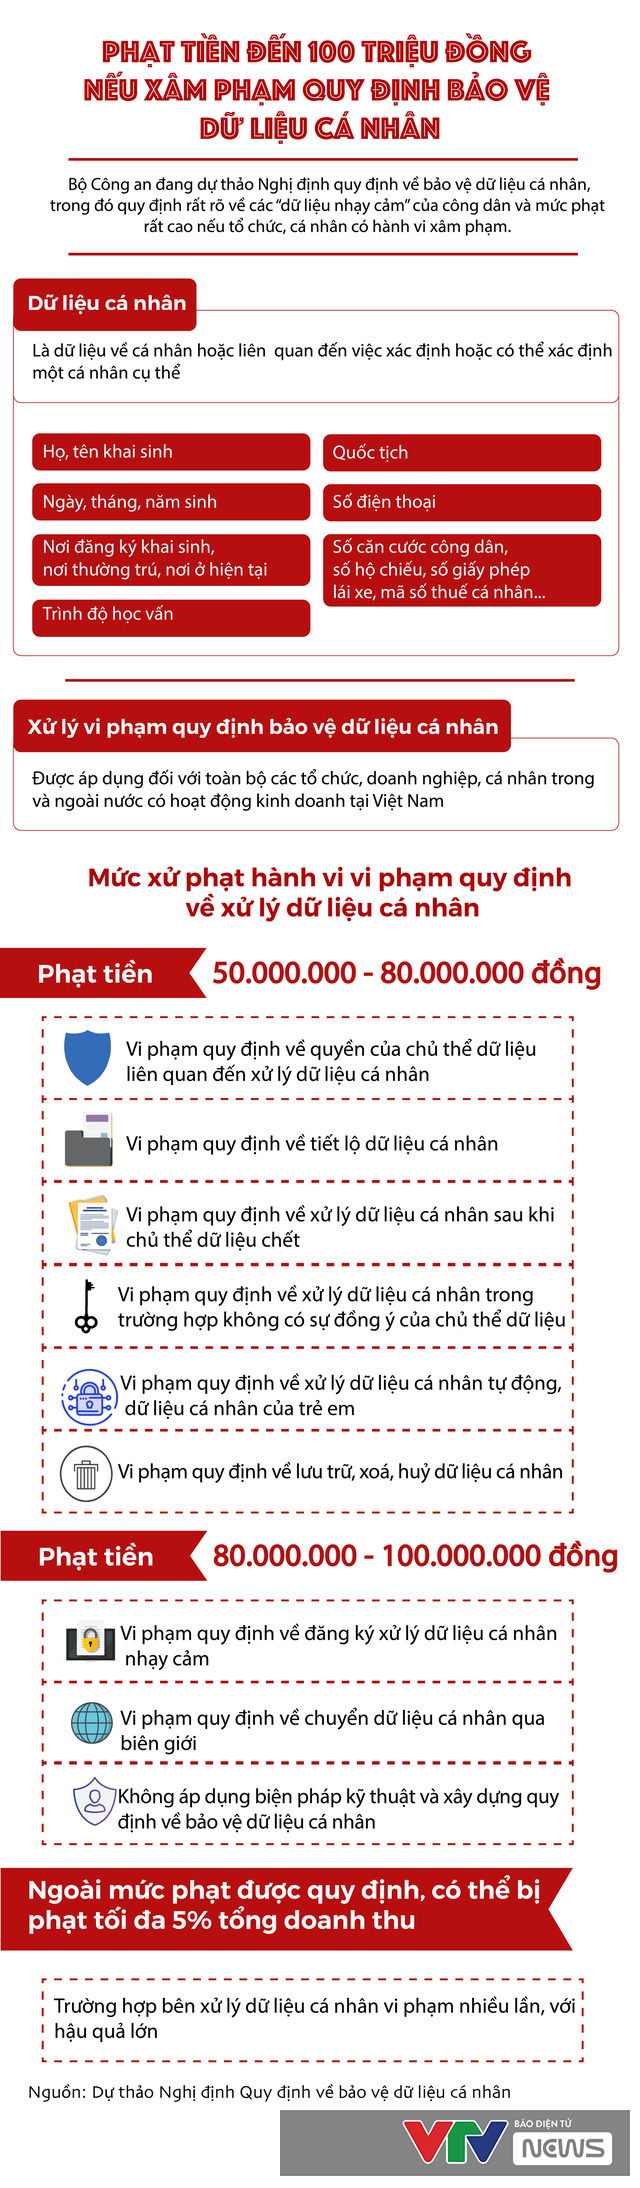 infographic de xuat phat den 100 trieu dong neu xam pham du lieu ca nhan nhay cam